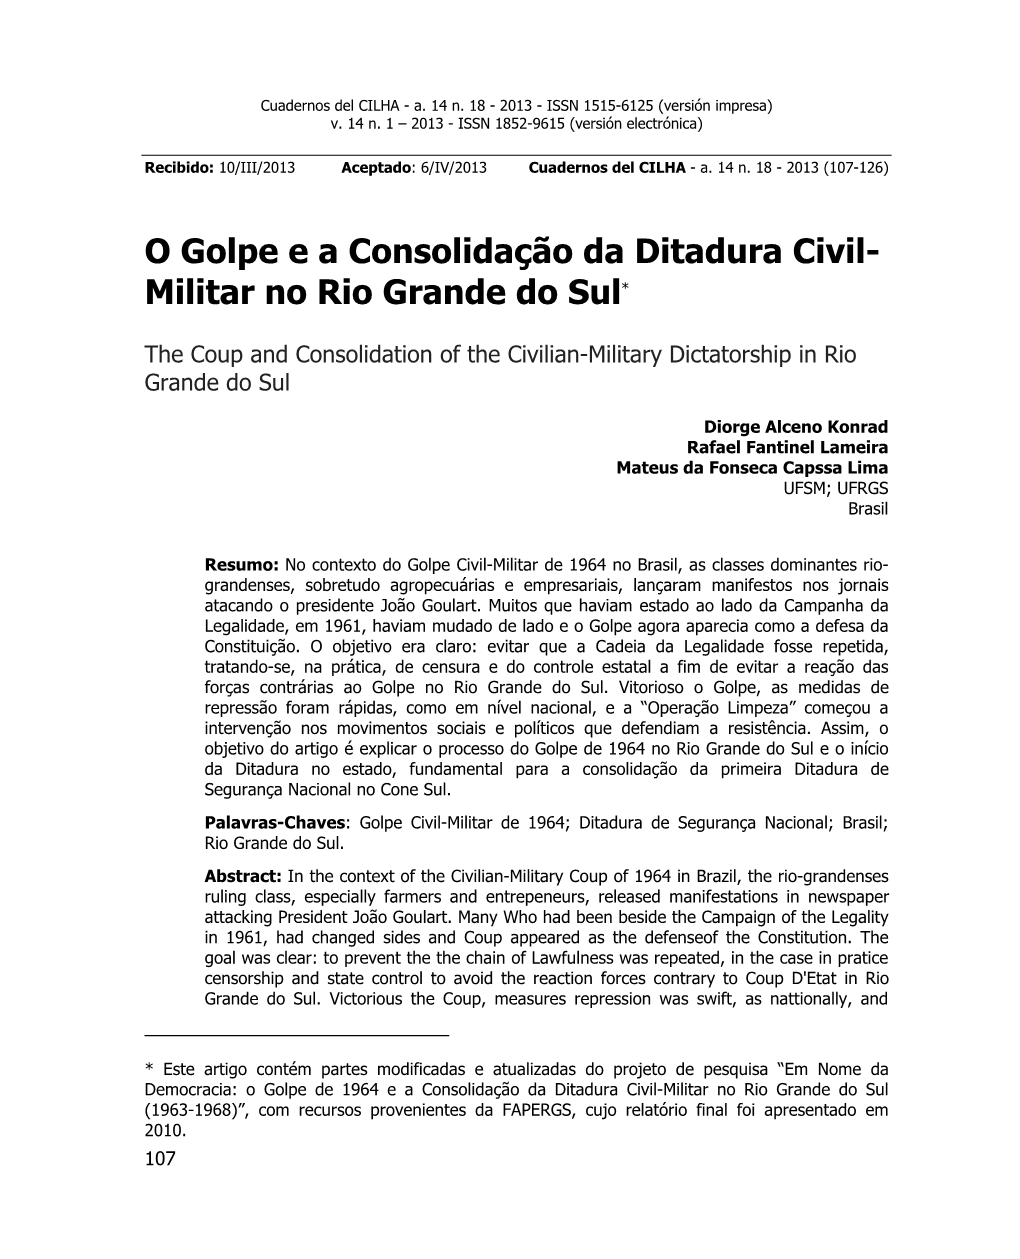 O Golpe E a Consolidação Da Ditadura Civil- Militar No Rio Grande Do Sul*